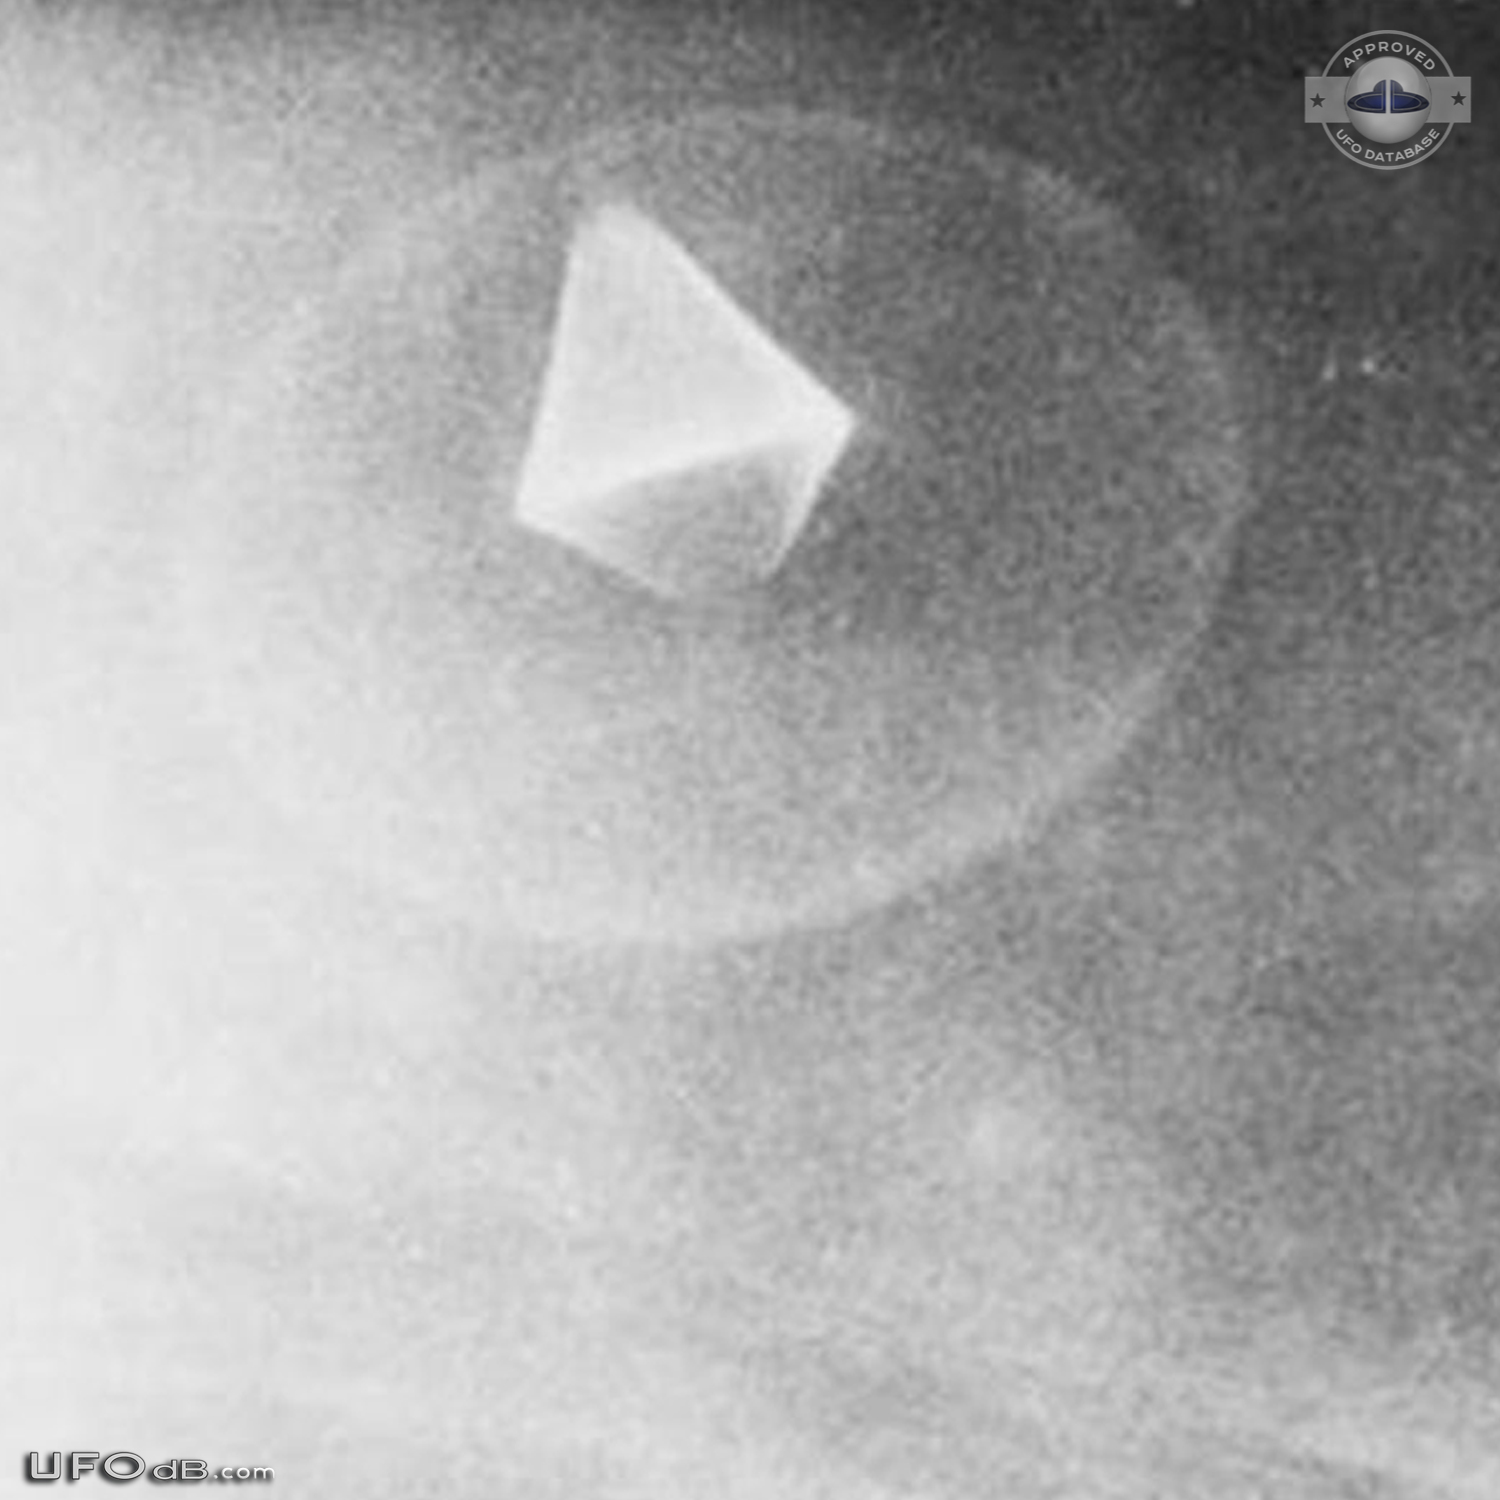 CIA Declassified UFO picture of 1968 in Maimi, Florida USA UFO Picture #630-3